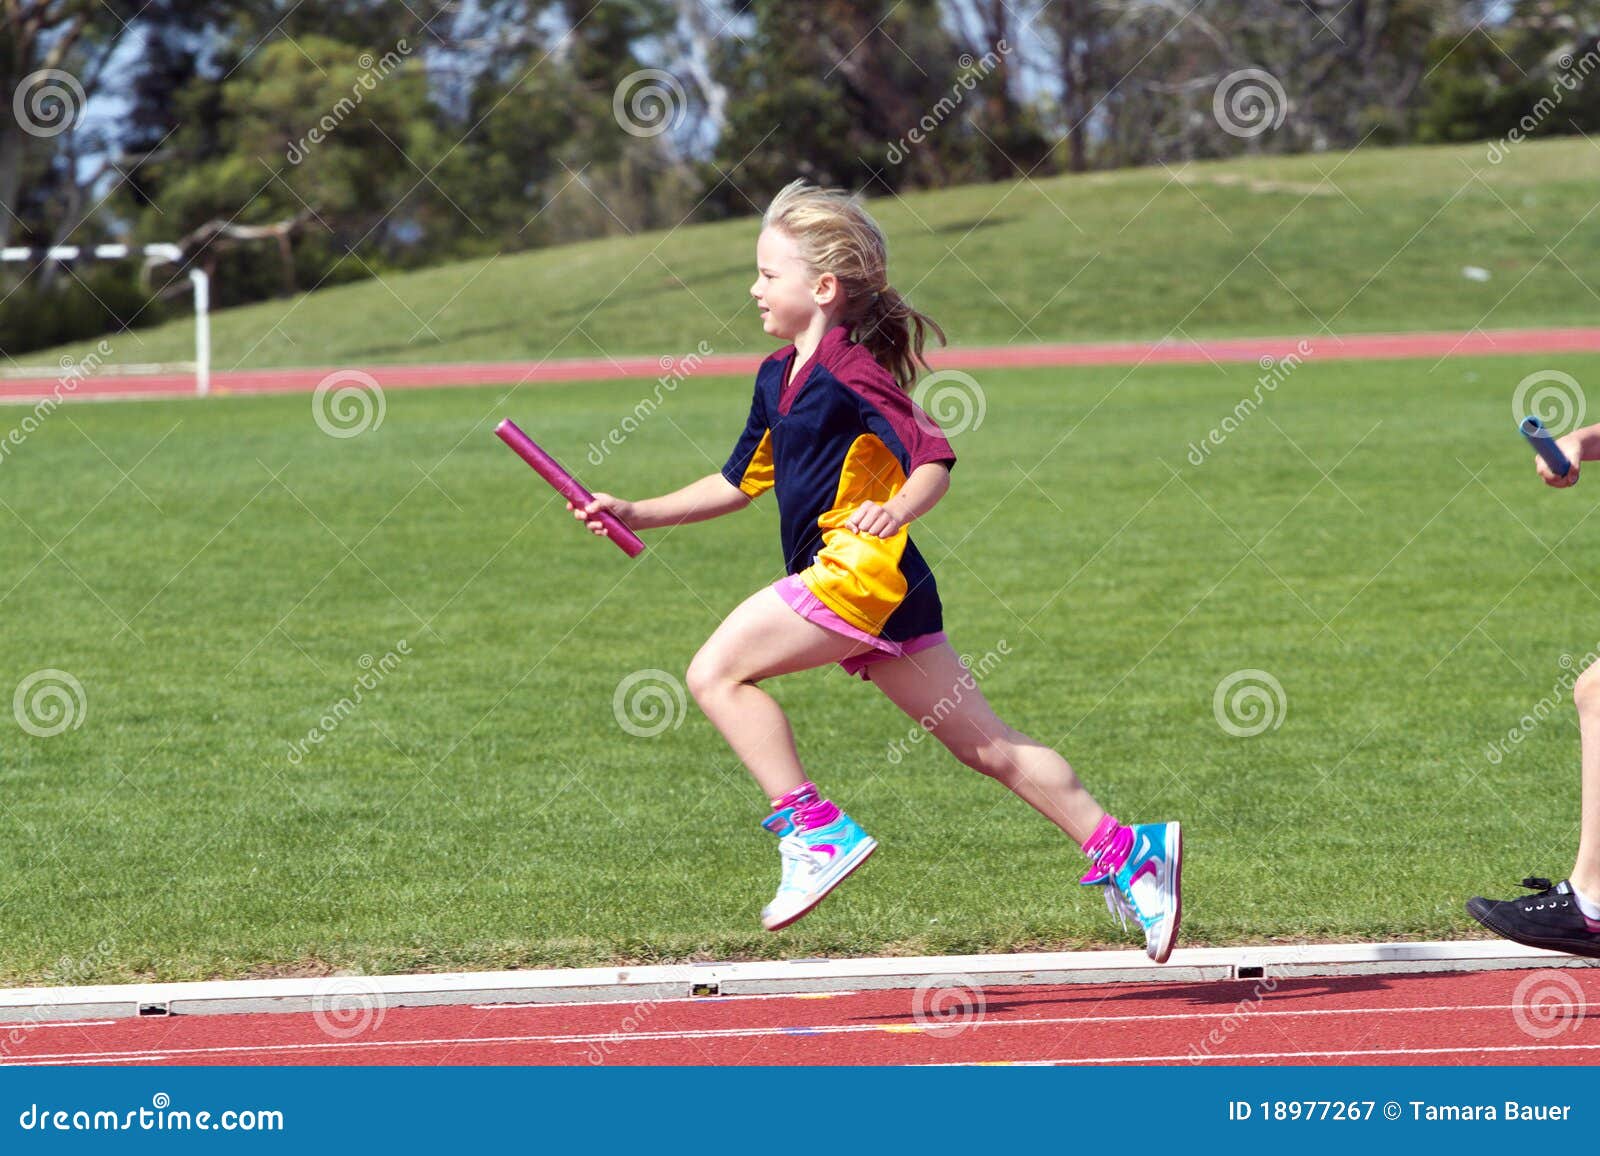 girl in sports race